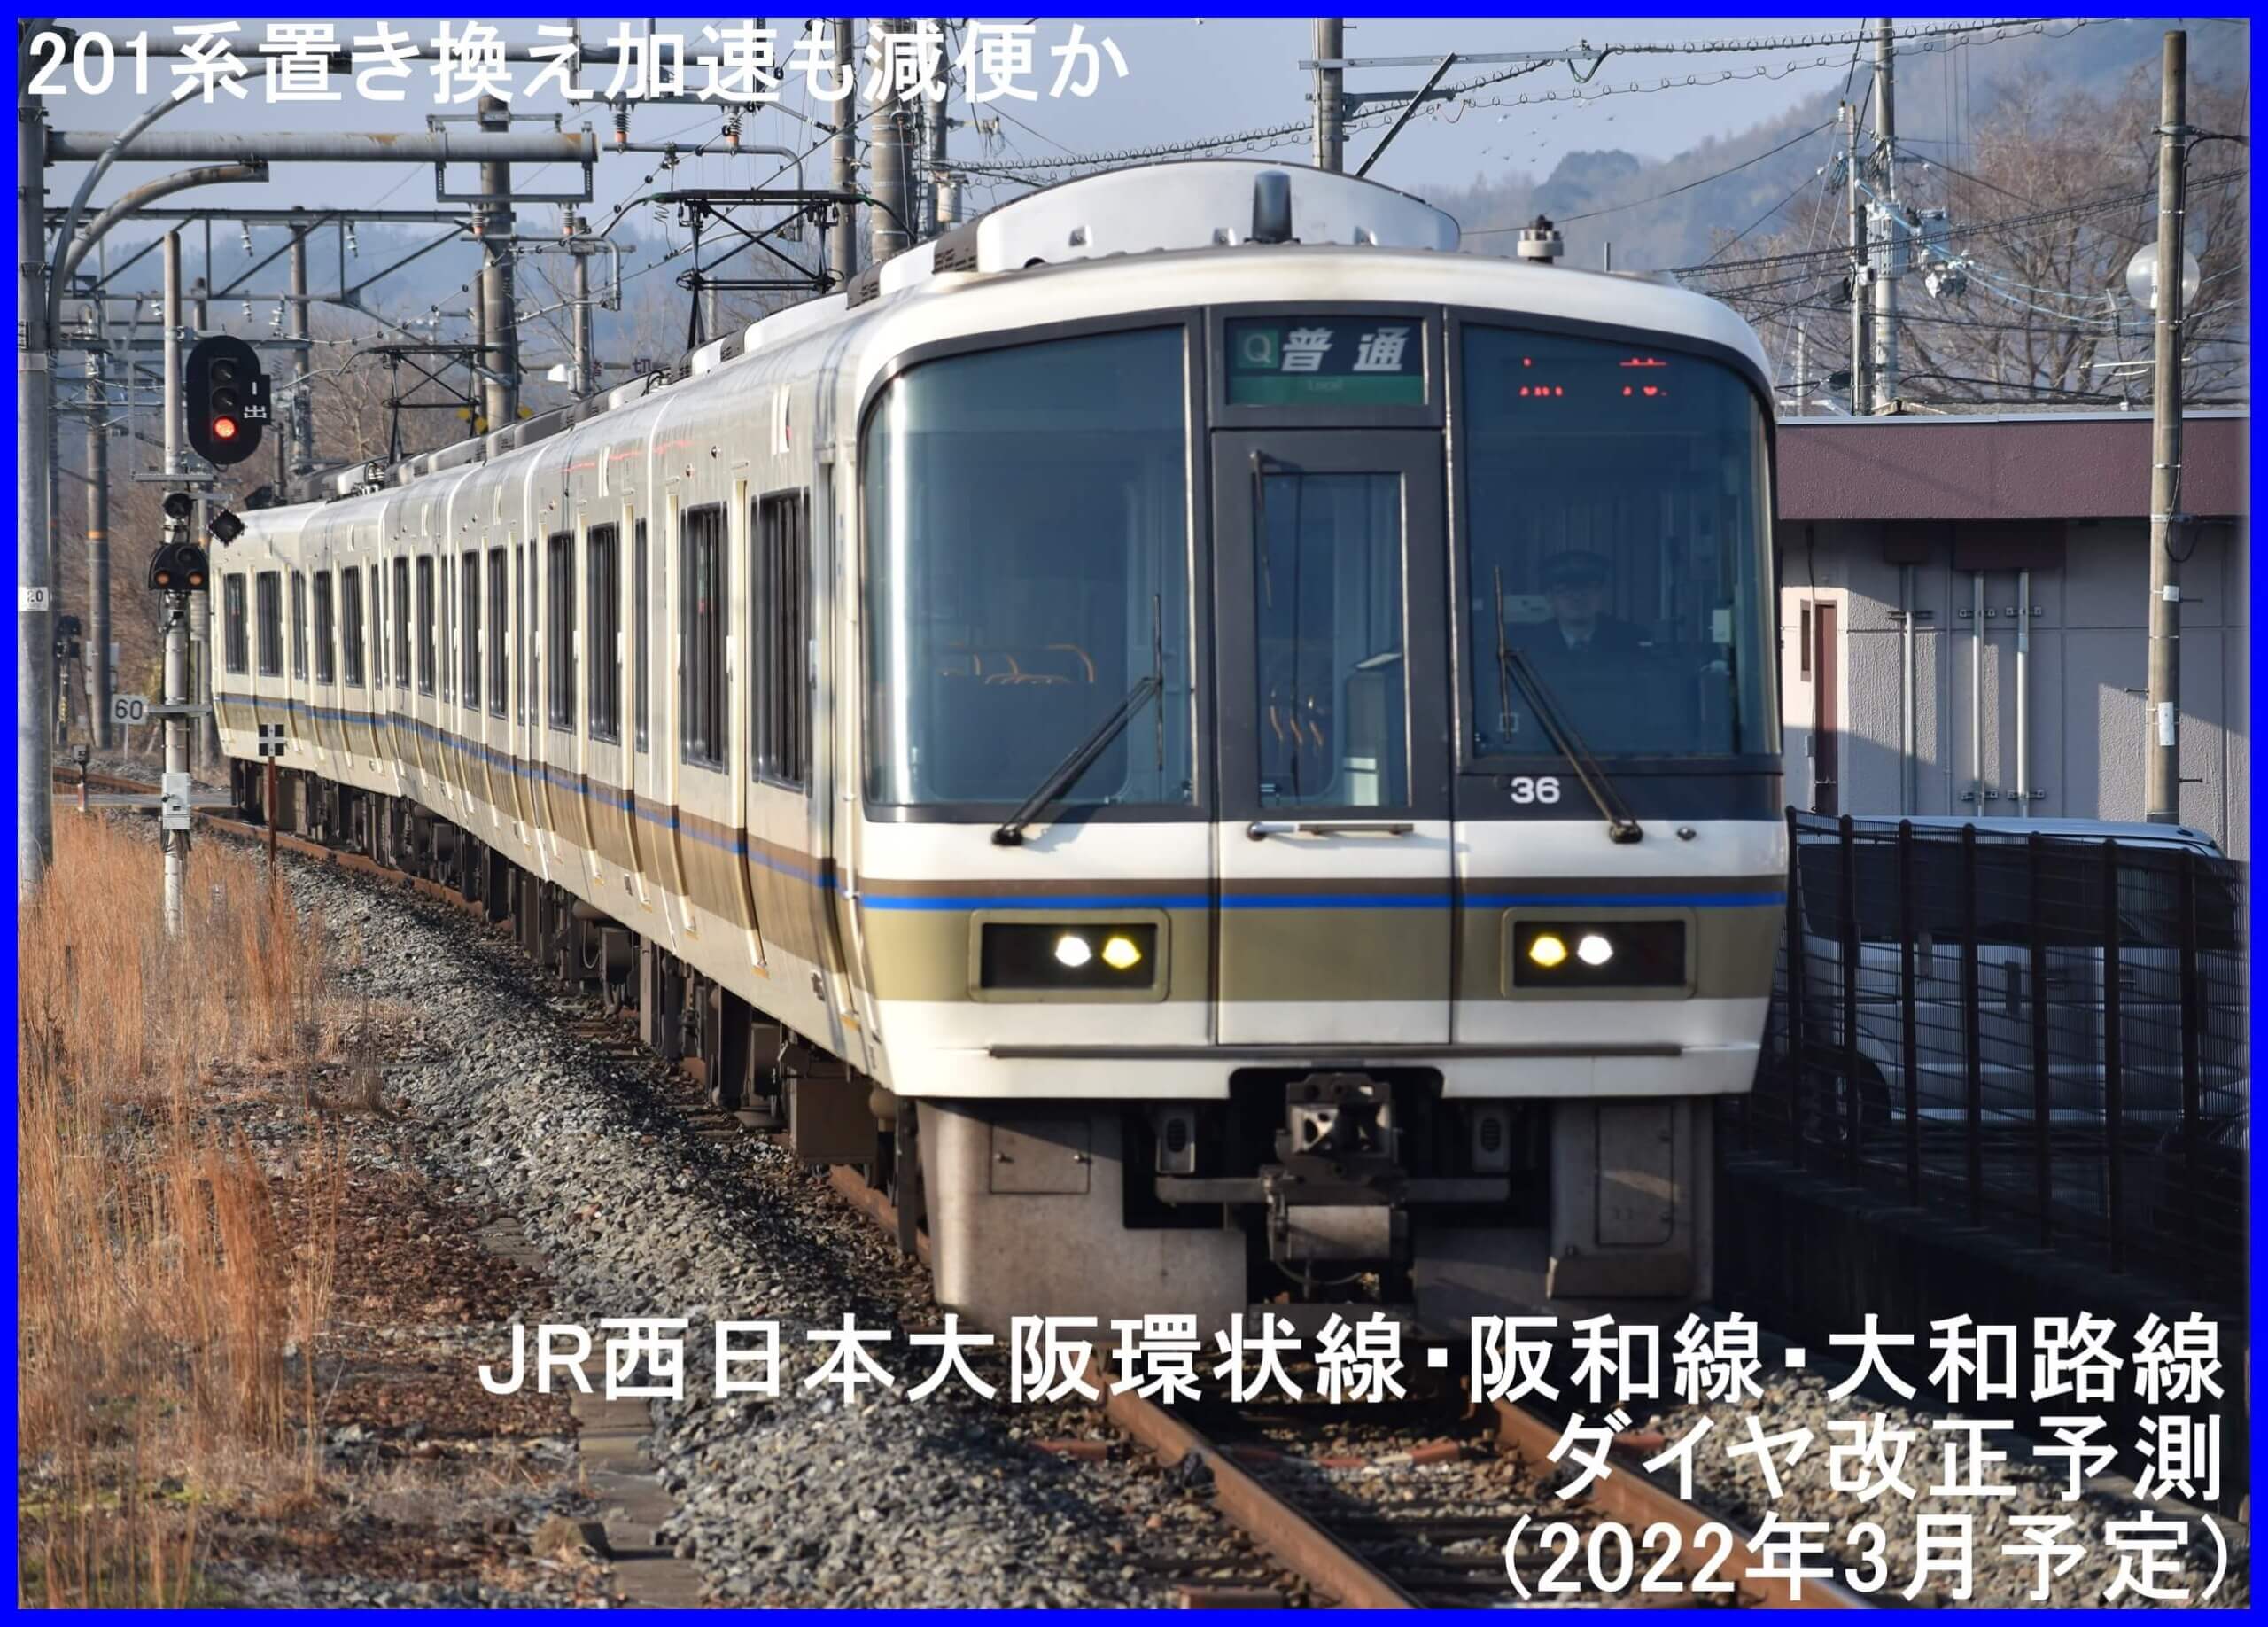 201系置き換え加速も減便か　JR西日本大阪環状線・阪和線・大和路線ダイヤ改正予測(2022年3月予定)